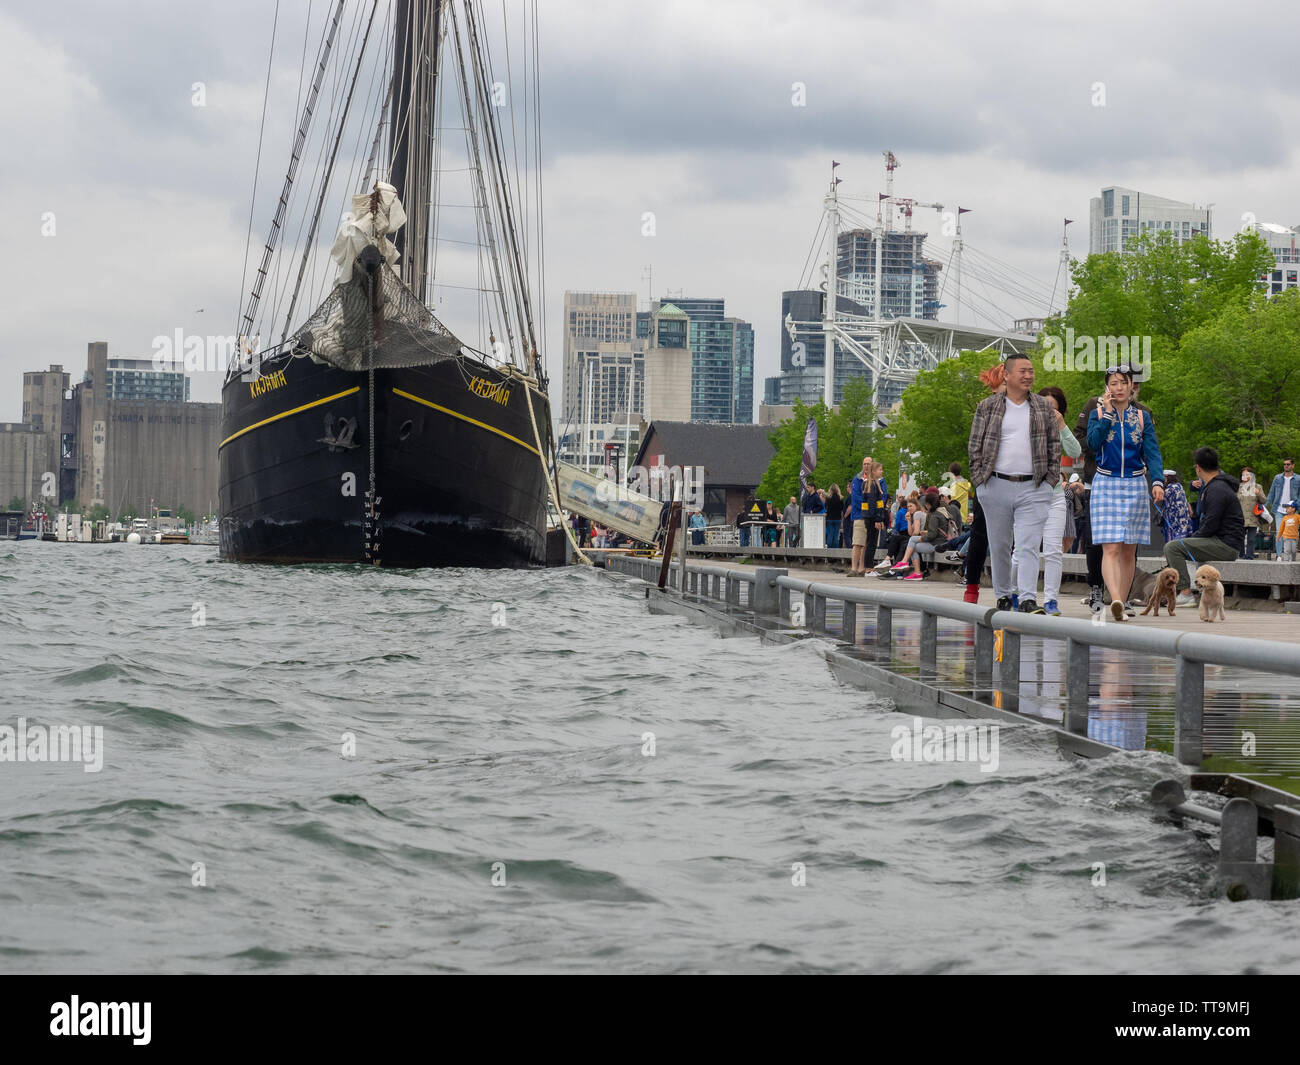 Toronto, Kanada. 15 Juni, 2019. Toronto Tall Ship Kajama im Quay angedockt ist nach starken Regenfällen im Jahr 2019 Wasserstand in der Nähe von Boden angehoben. Stockfoto